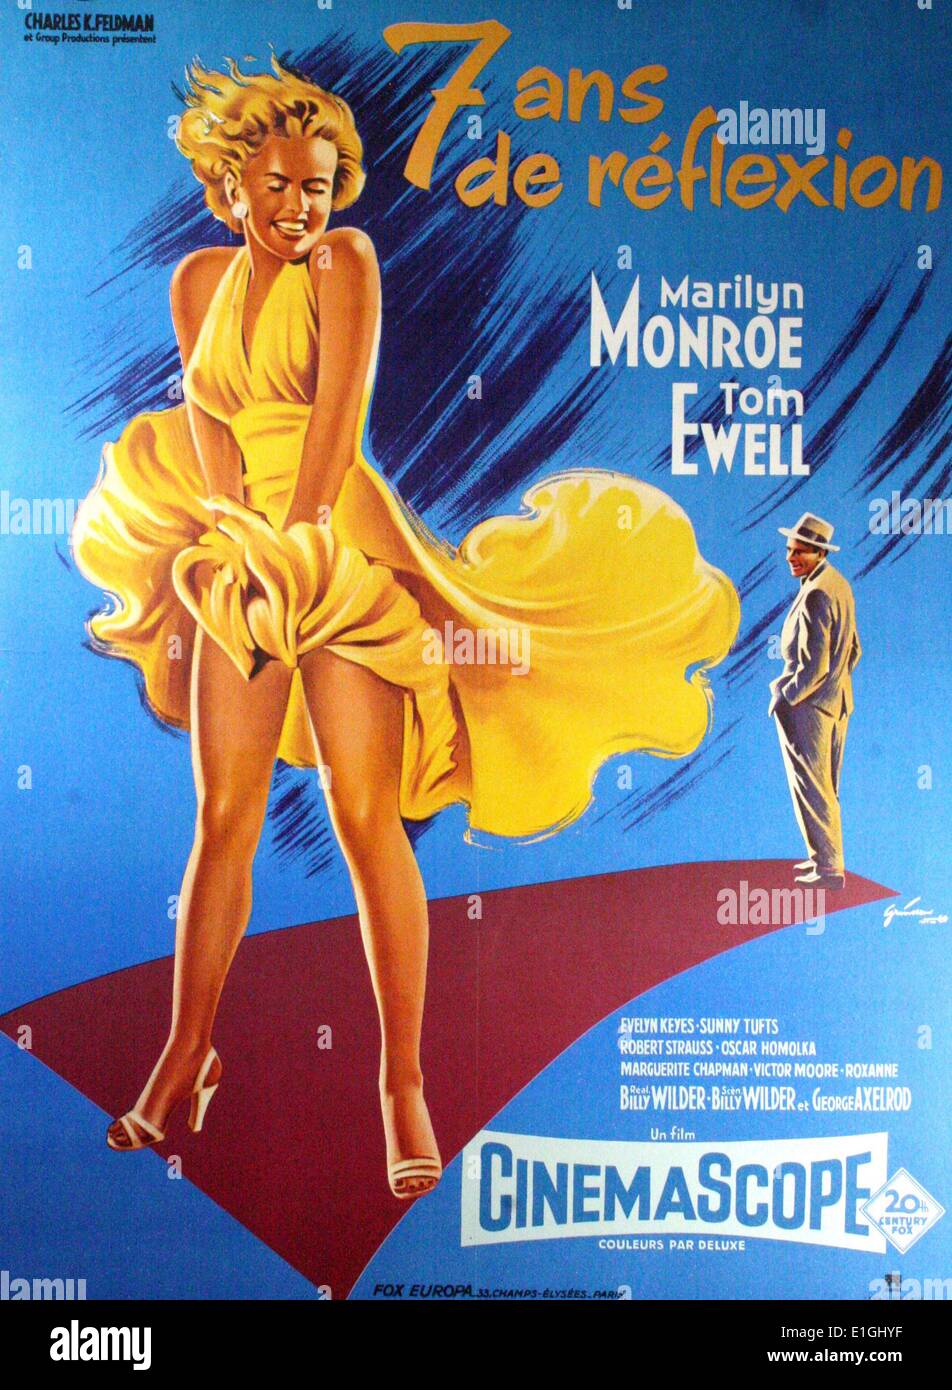 Das verflixte siebte Jahr eine romantische Komödie 1955 Film mit Marilyn Monroe und Tom Ewell. Stockfoto